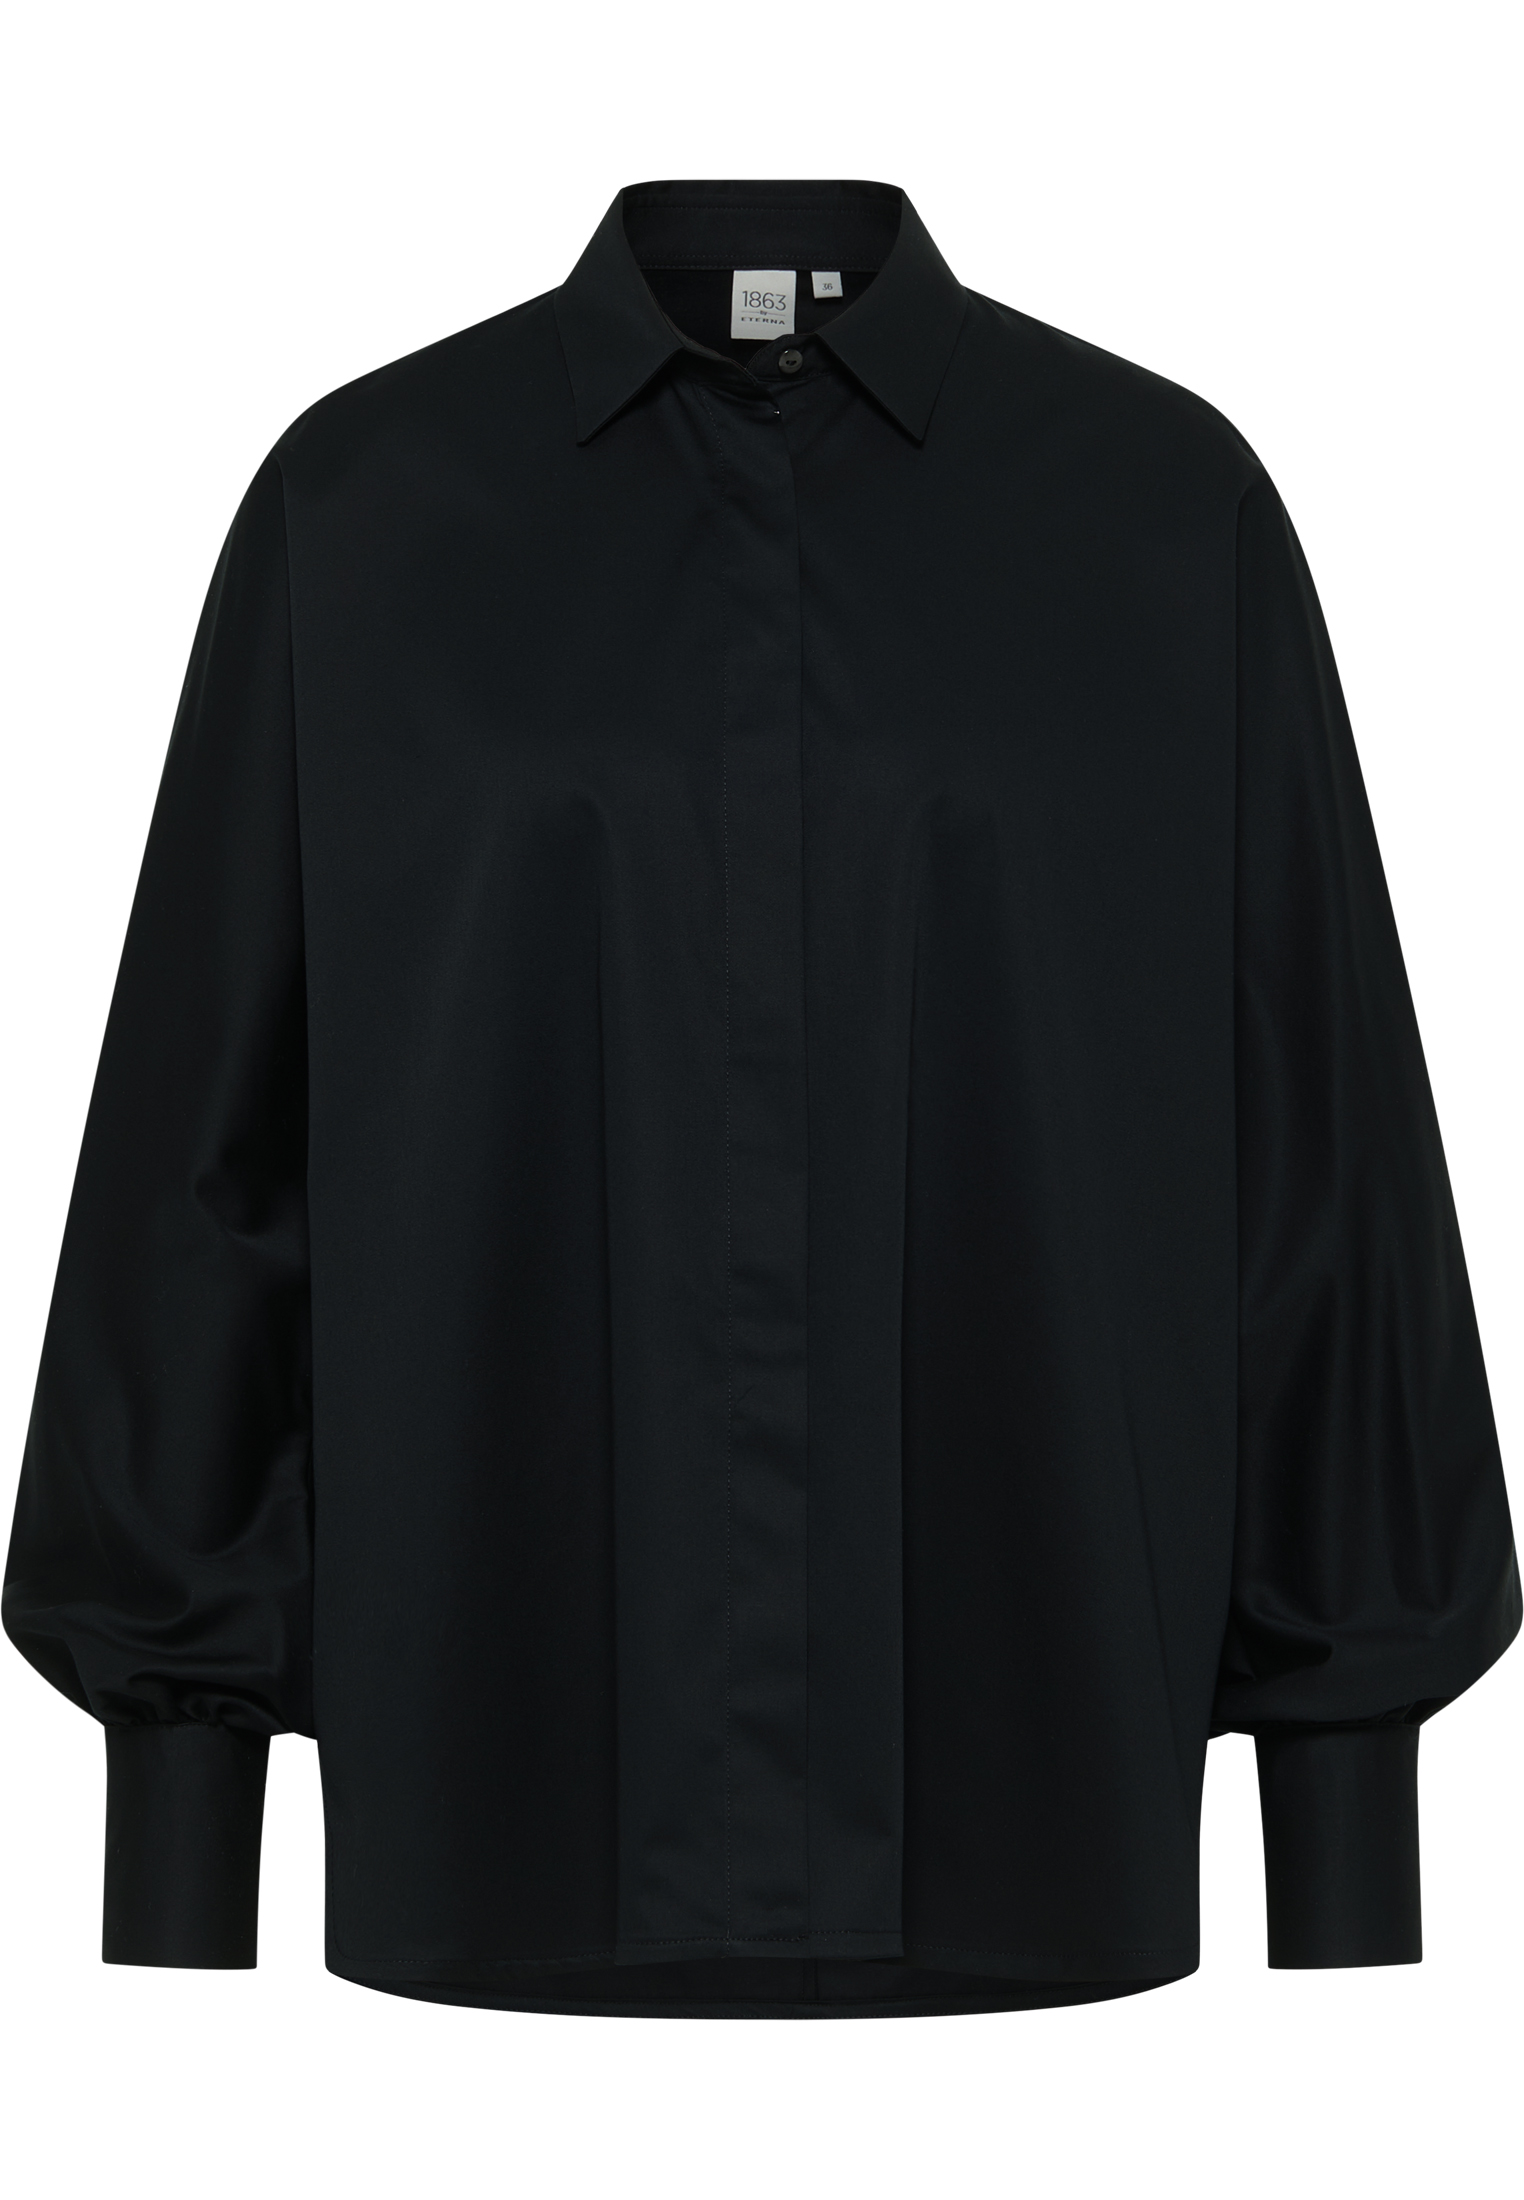 Satin Shirt unifarben Langarm | | Bluse schwarz 2BL04026-03-91-40-1/1 | in schwarz 40 